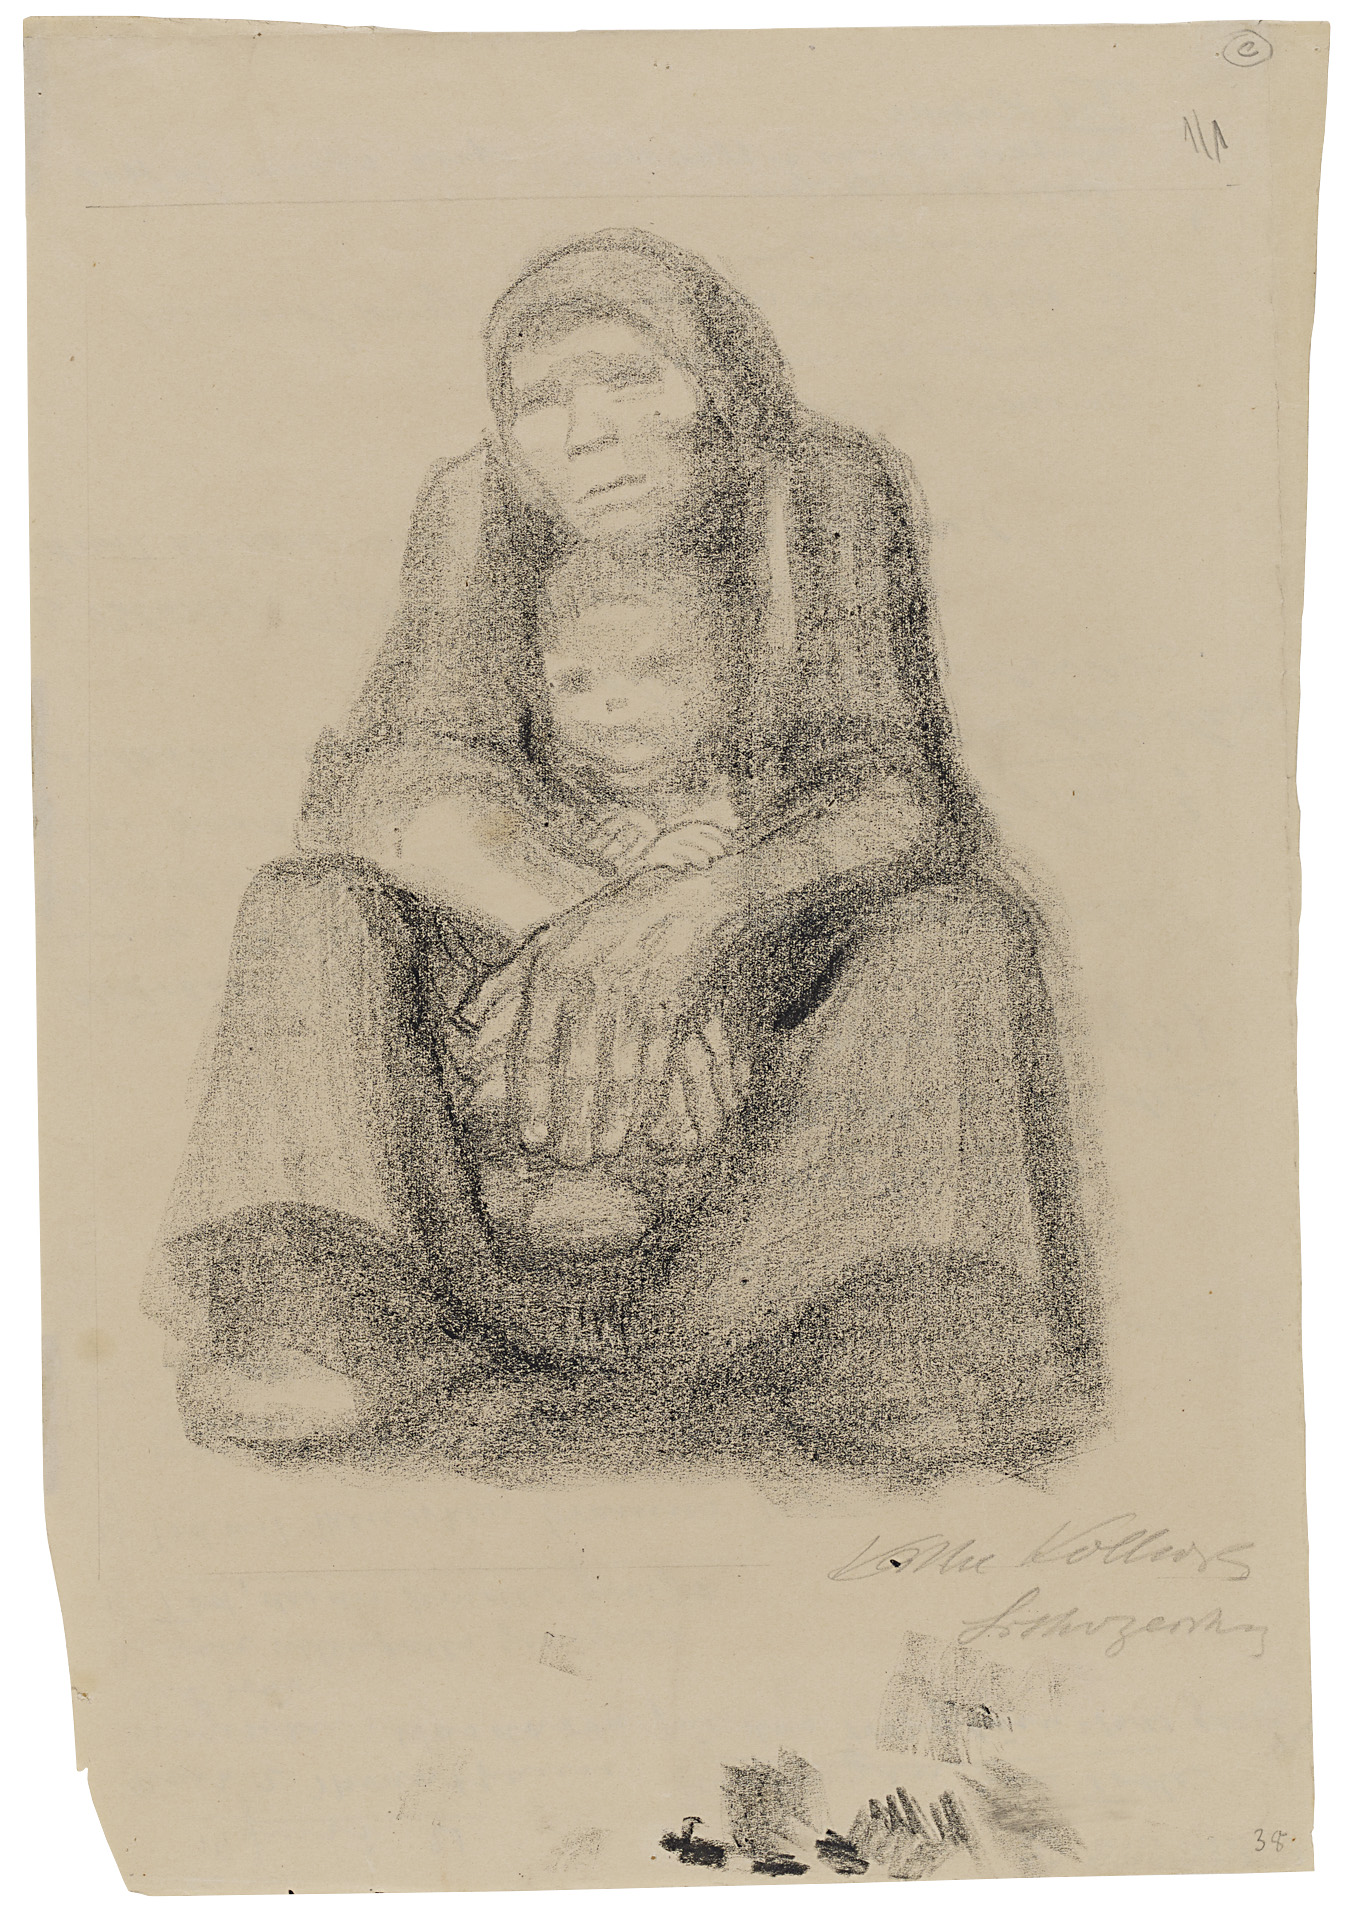 Käthe Kollwitz, Femme assise avec enfant sur les genoux, 1921, dessin sur papier brun pour report sur pierre, NT 925, Collection Kollwitz de Cologne © Käthe Kollwitz Museum Köln